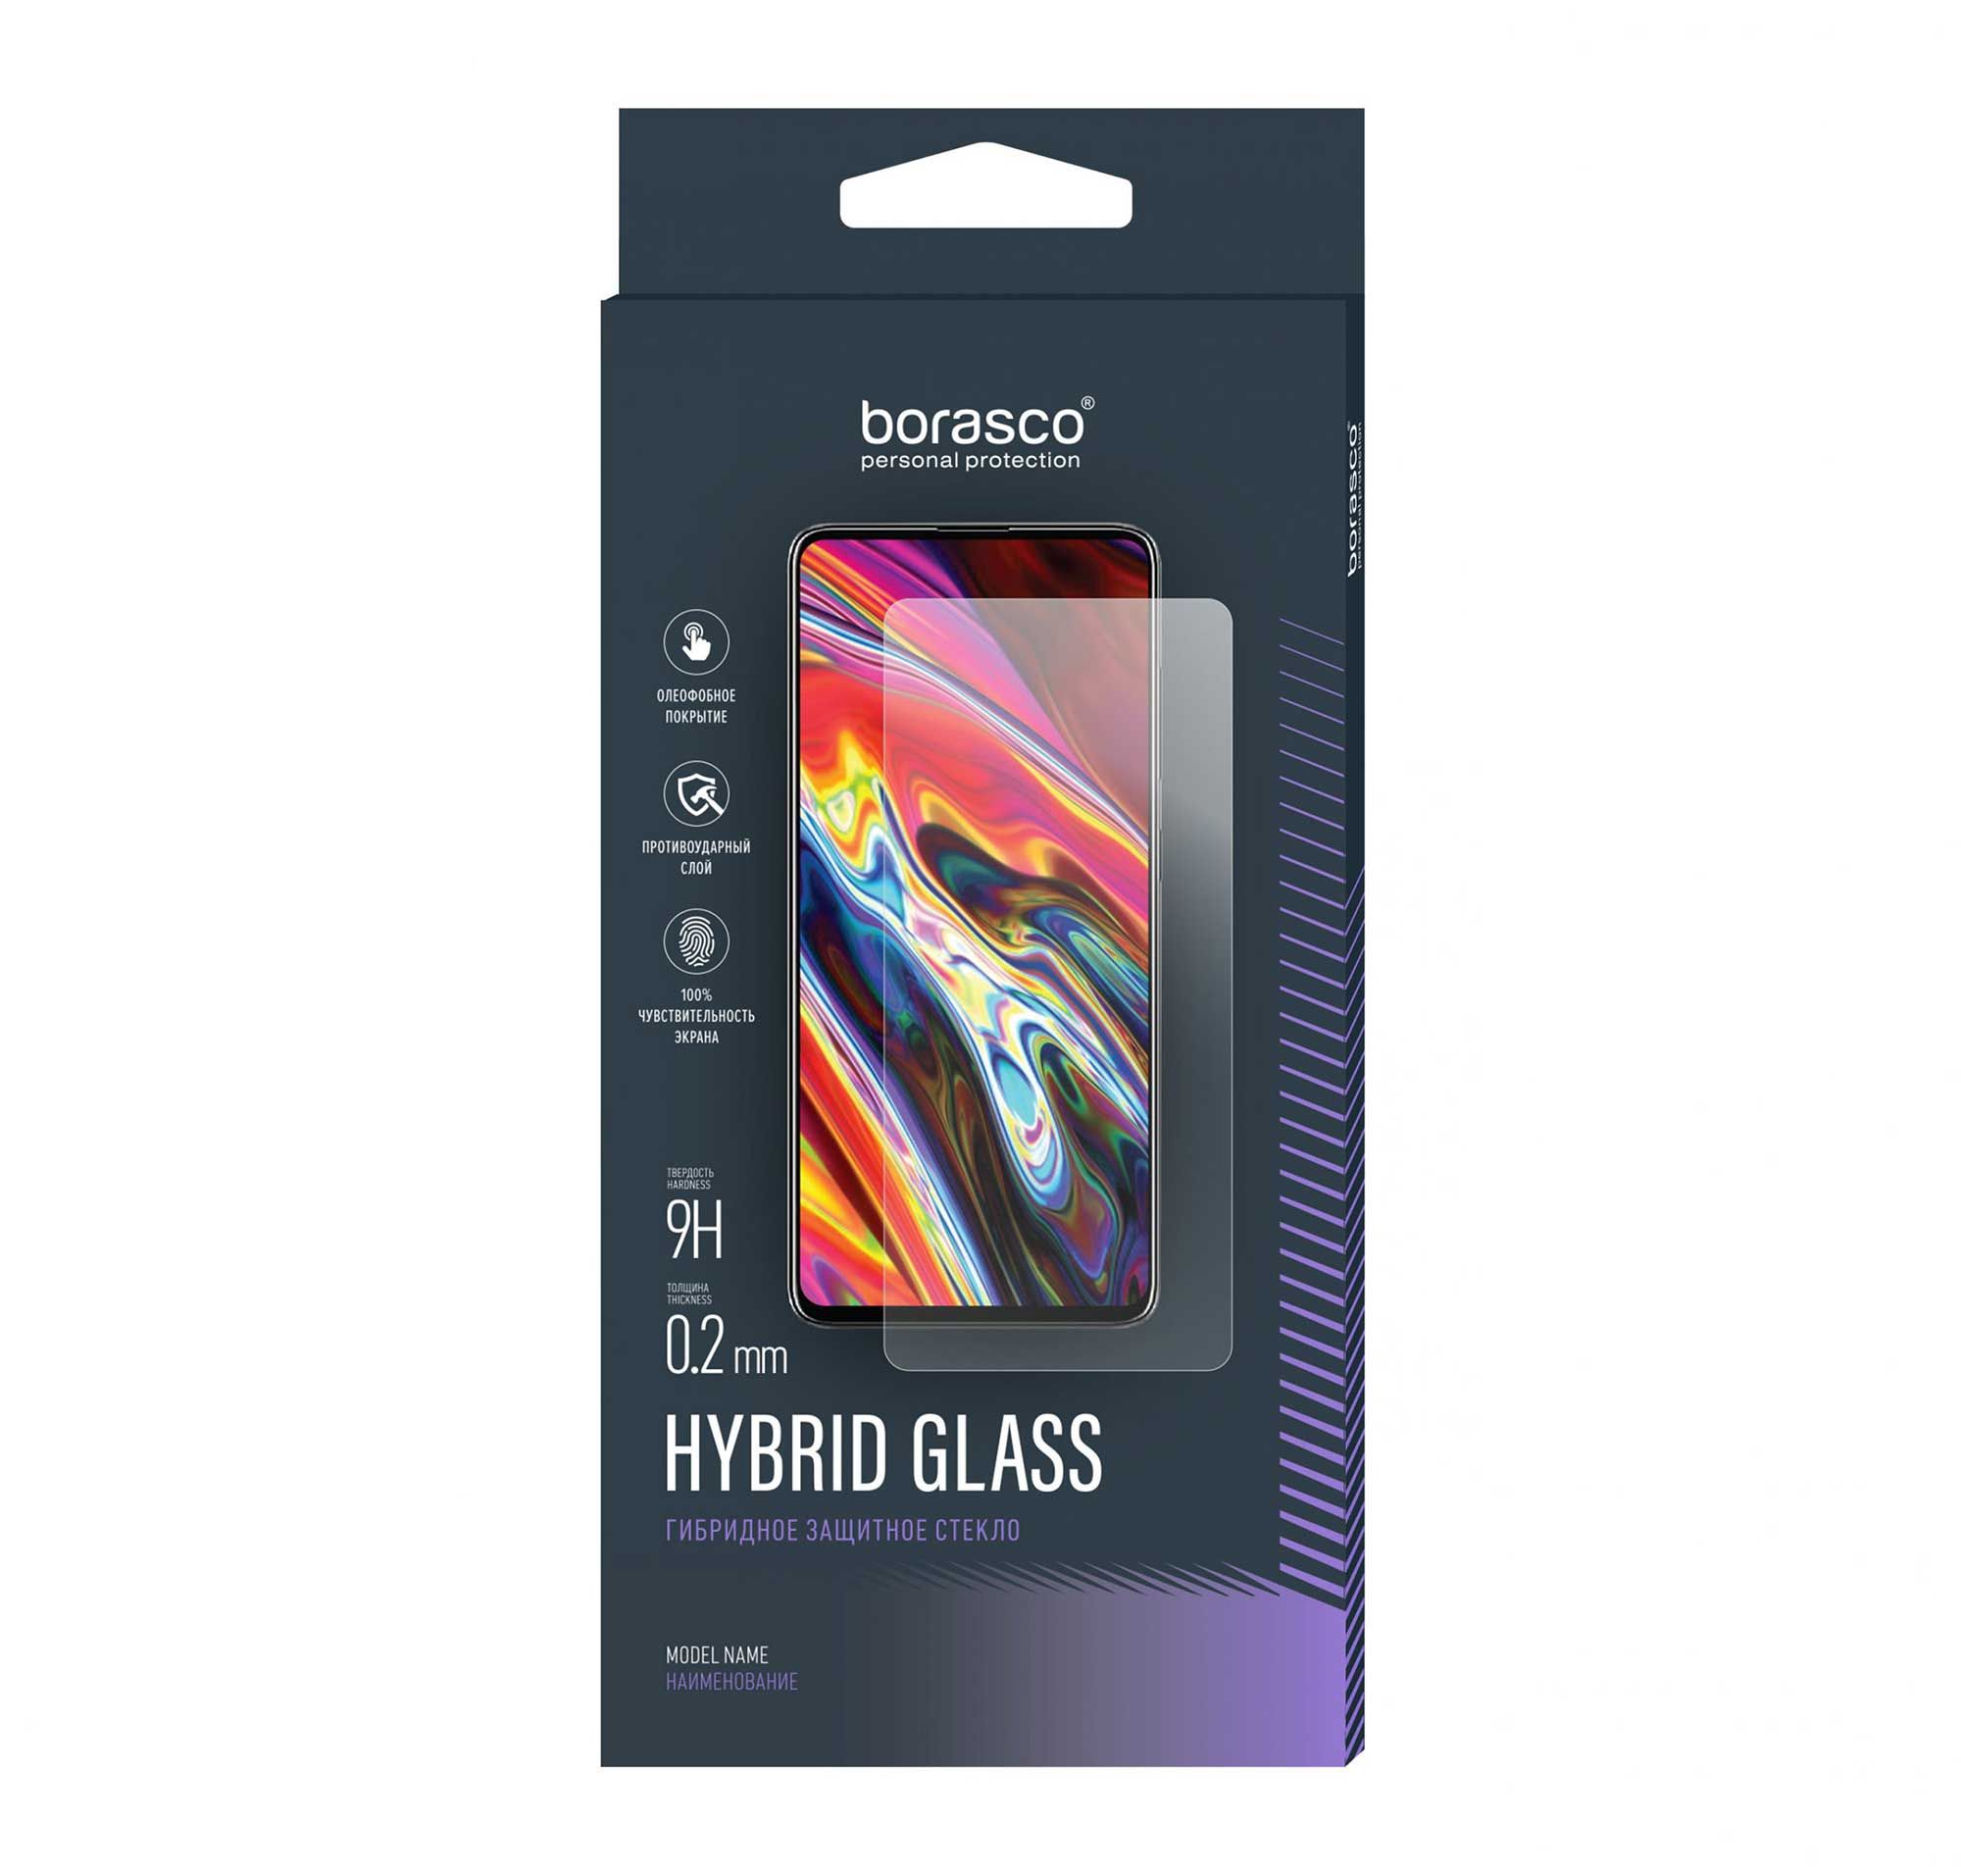 Защитное стекло Hybrid Glass для Huawei Nova Y70 защитное стекло на huawei p20 lite nova 3e